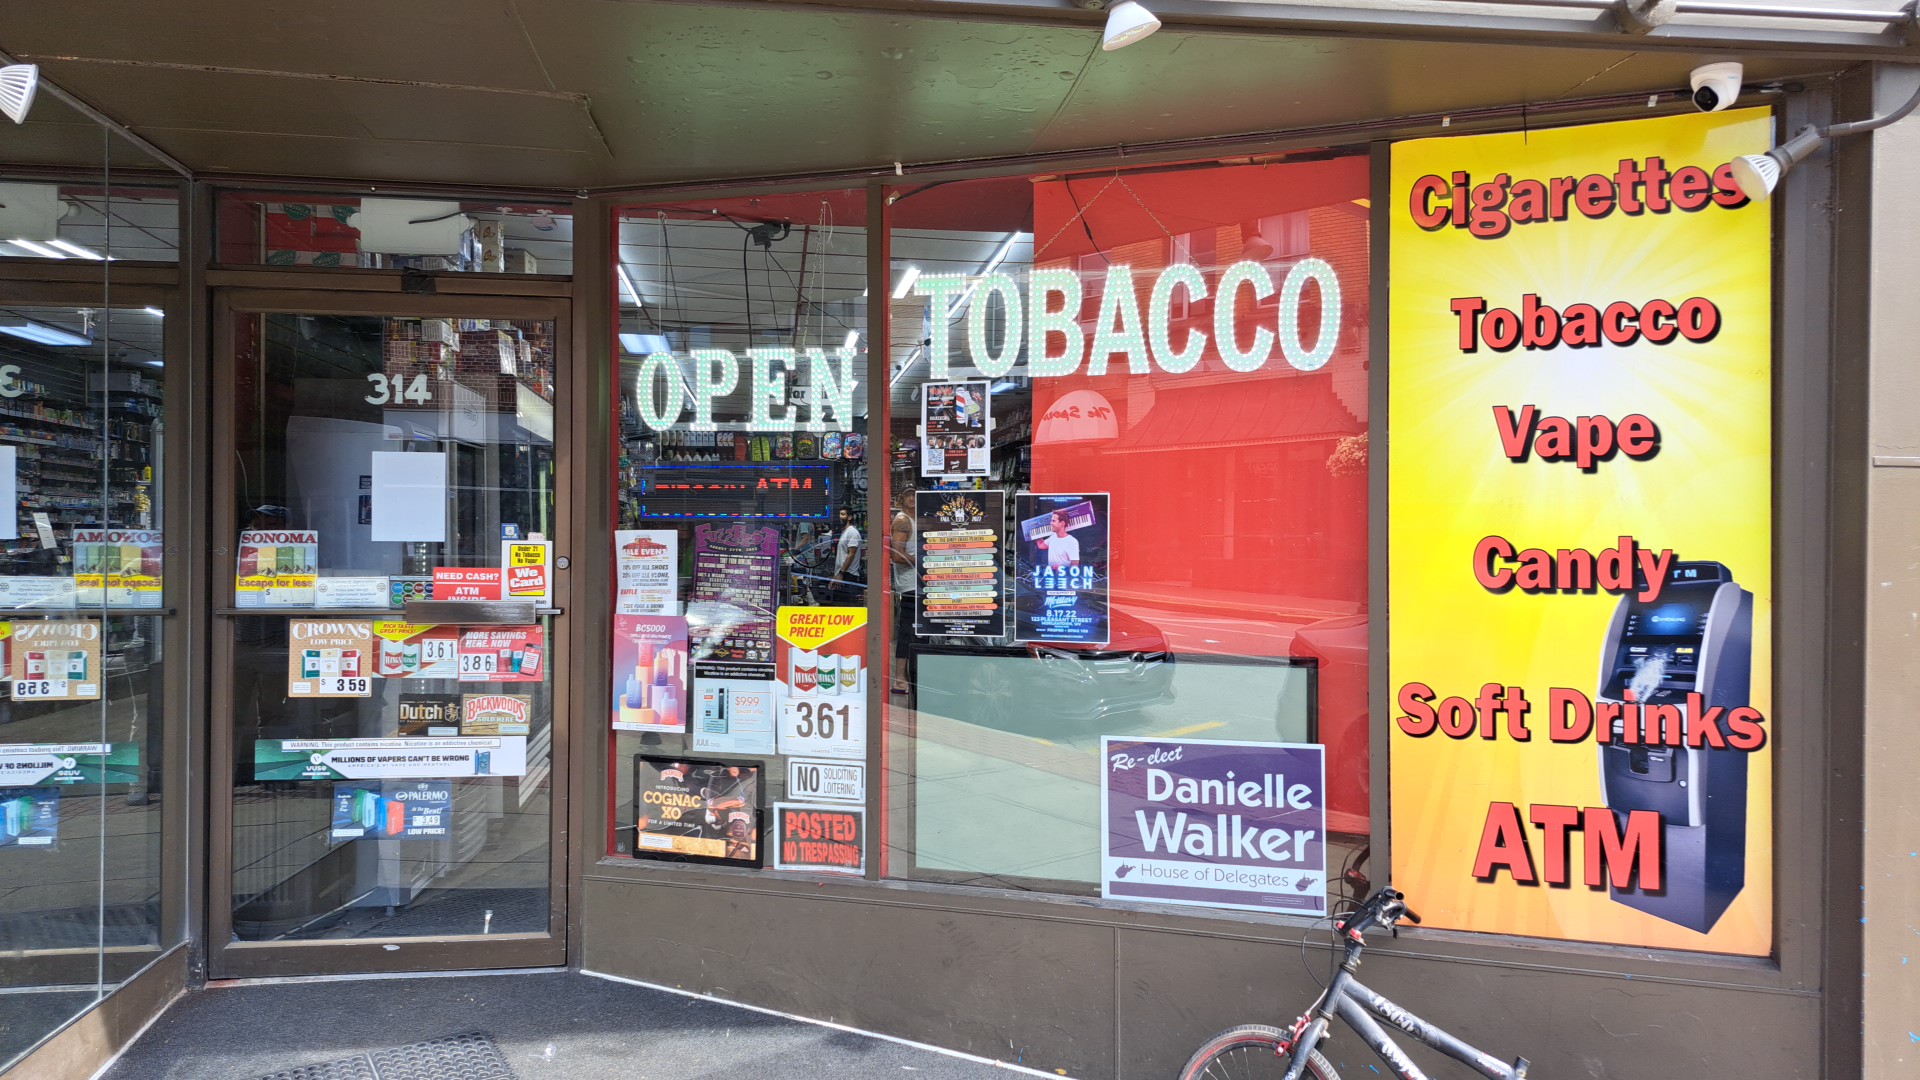 Morgantown Smokers & Vape( Abdo's store)